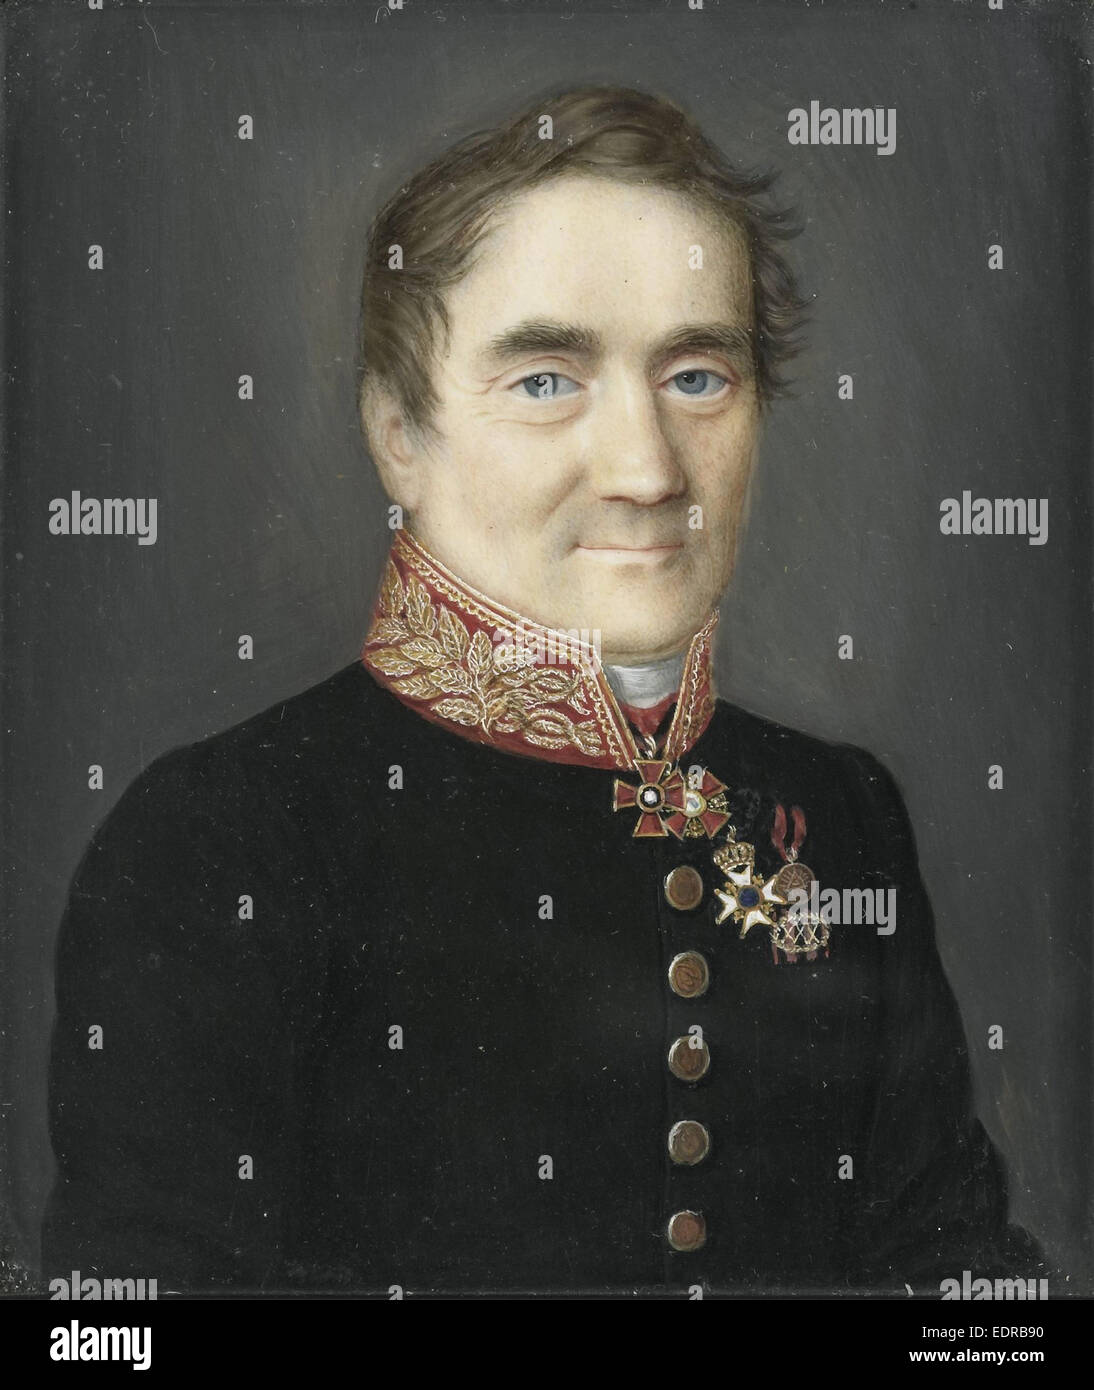 J C de Brunet. Consul général de Russie à Amsterdam, anonyme, c. 1850 Banque D'Images